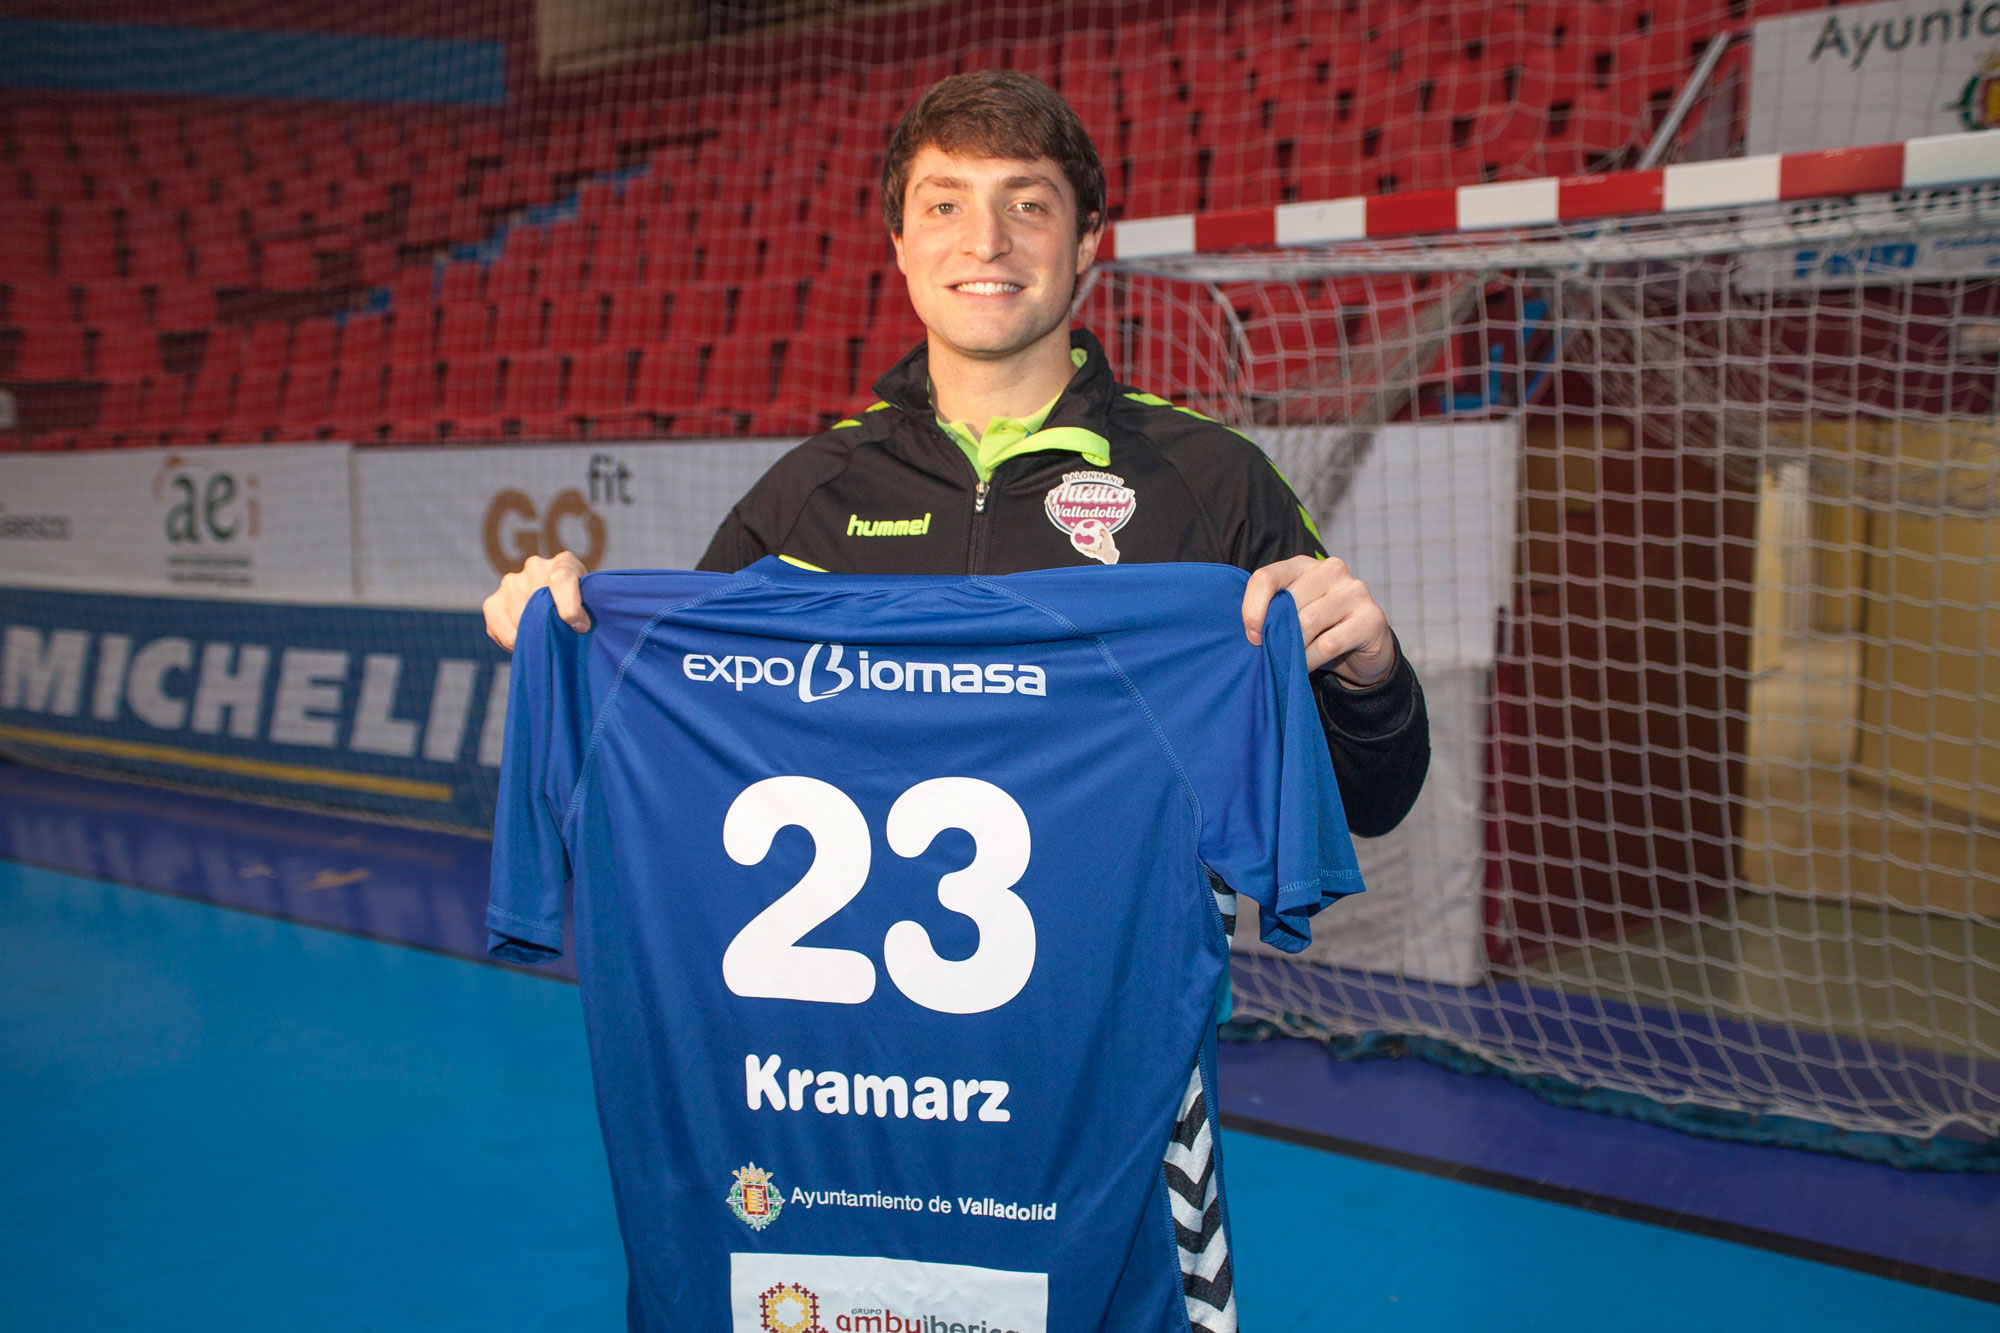 Sebastián Kramarz llega al Atlético Valladolid Recoletas para “ayudar y mantener al equipo en lo más alto de la tabla” | Galería 2 / 3